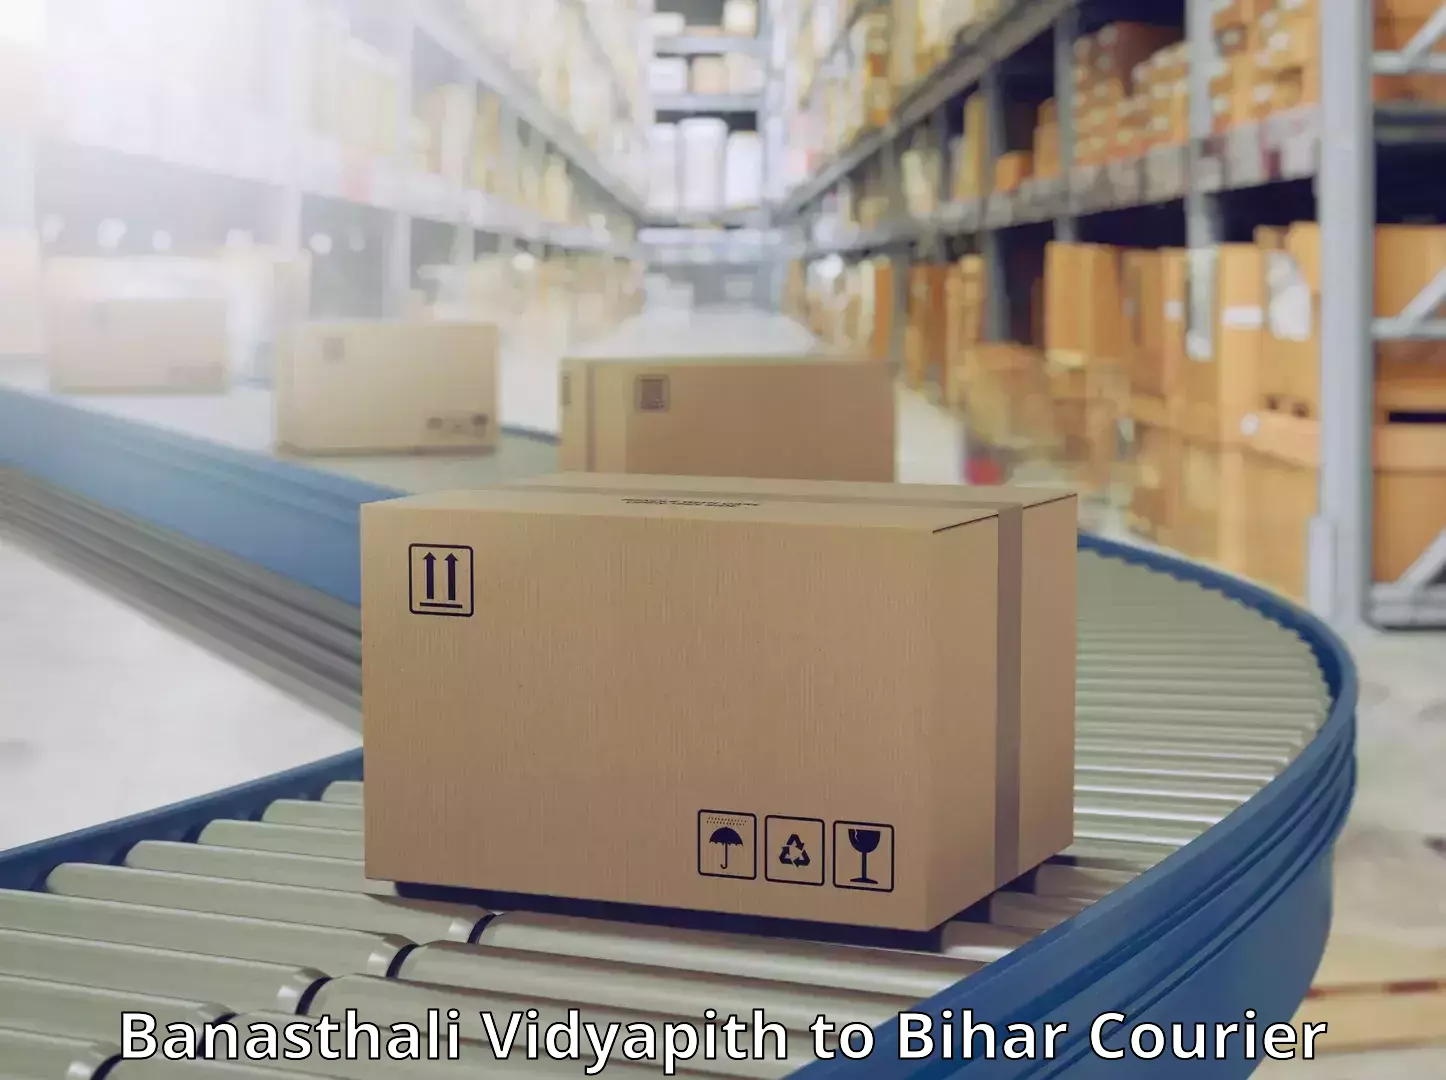 Fast shipping solutions Banasthali Vidyapith to Jaynagar